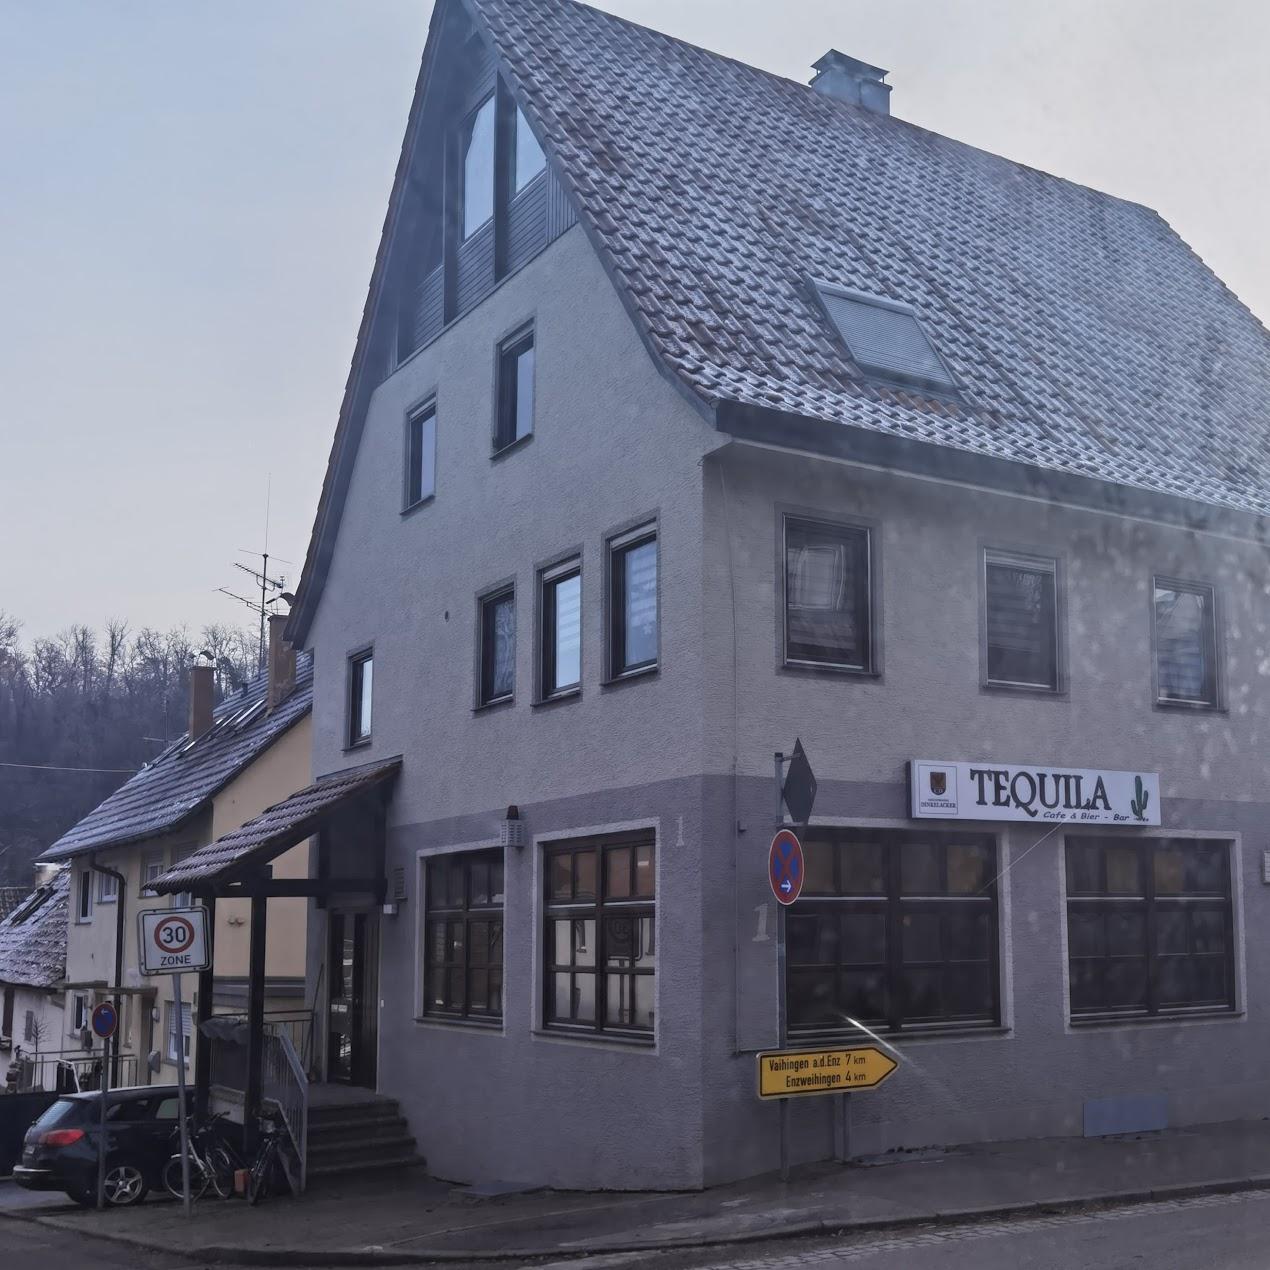 Restaurant "Tequila" in Oberriexingen